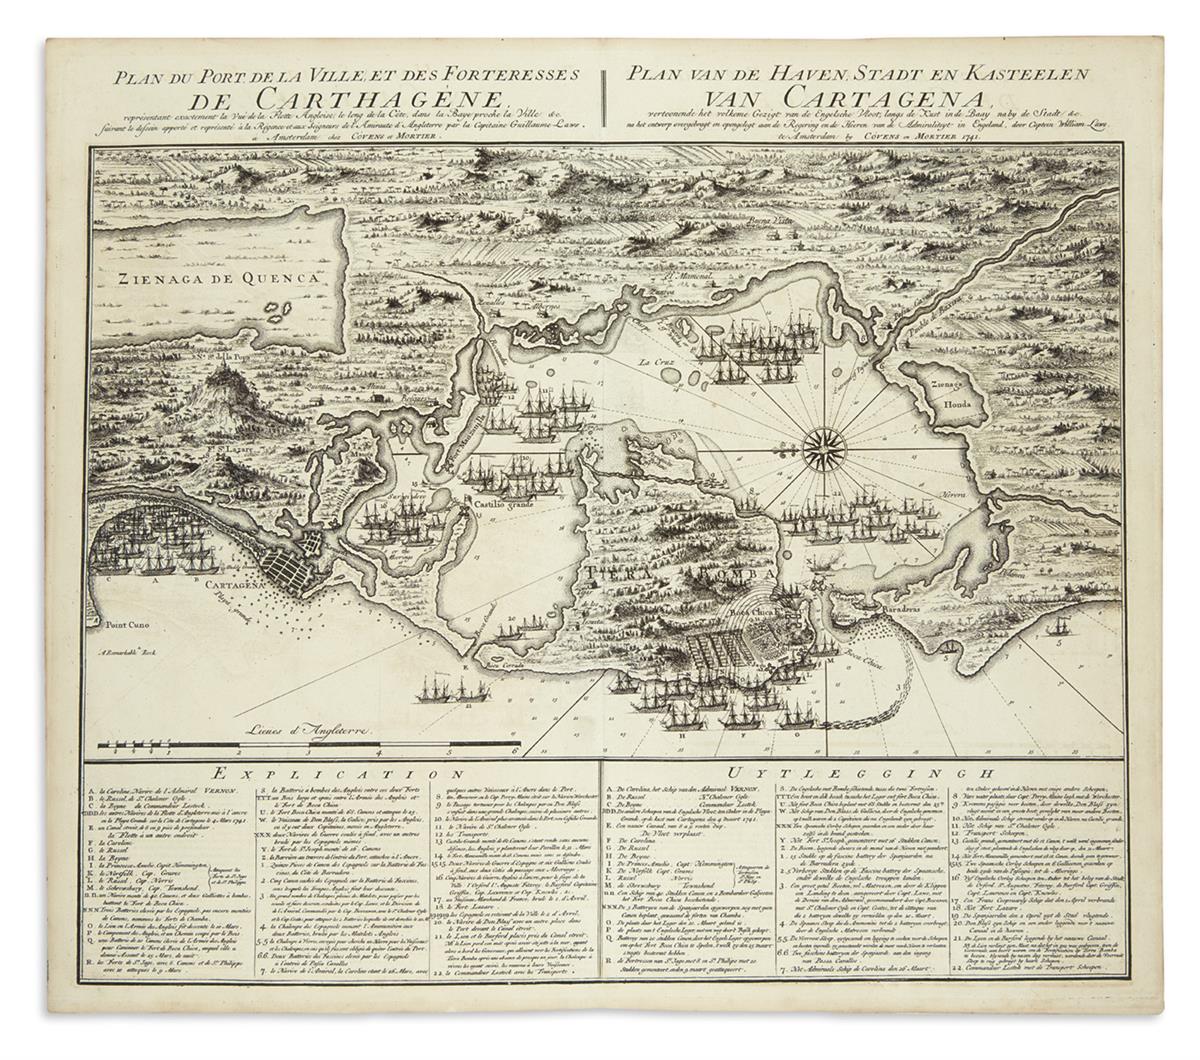 (CARTAGENA.) Covens & Mortier after Captain William Laws. Plan du Port, de la Ville, et des Forteresses de Carthagene.